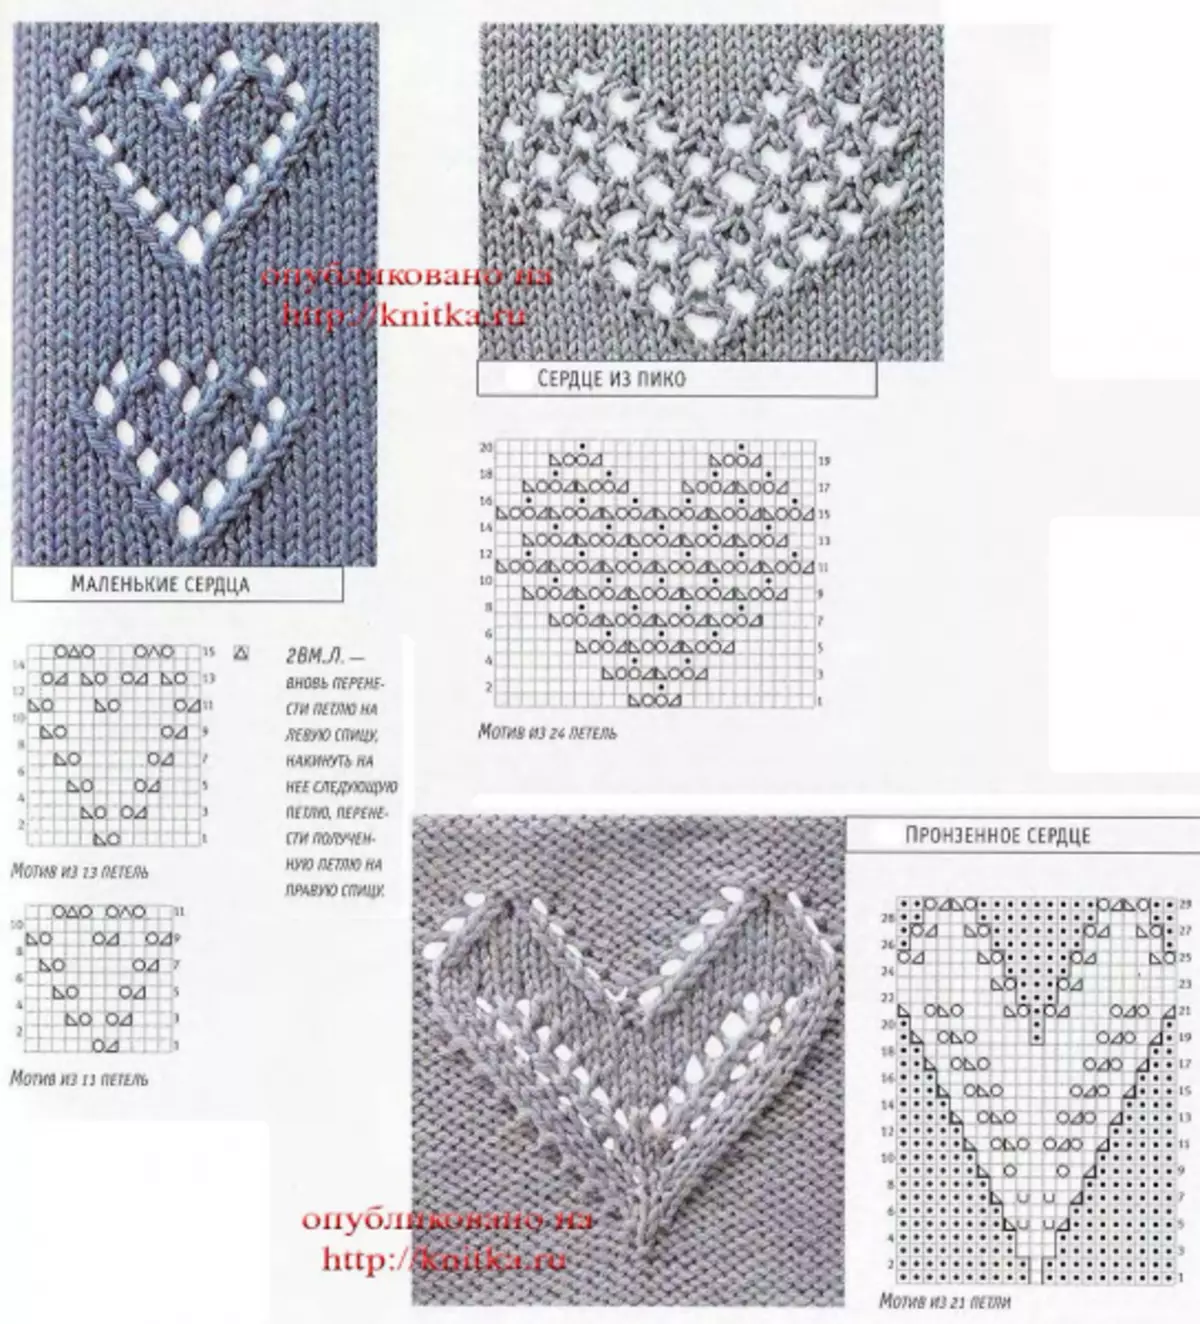 OpenWork crtež sa srcima sa srcima s opisima i shemama